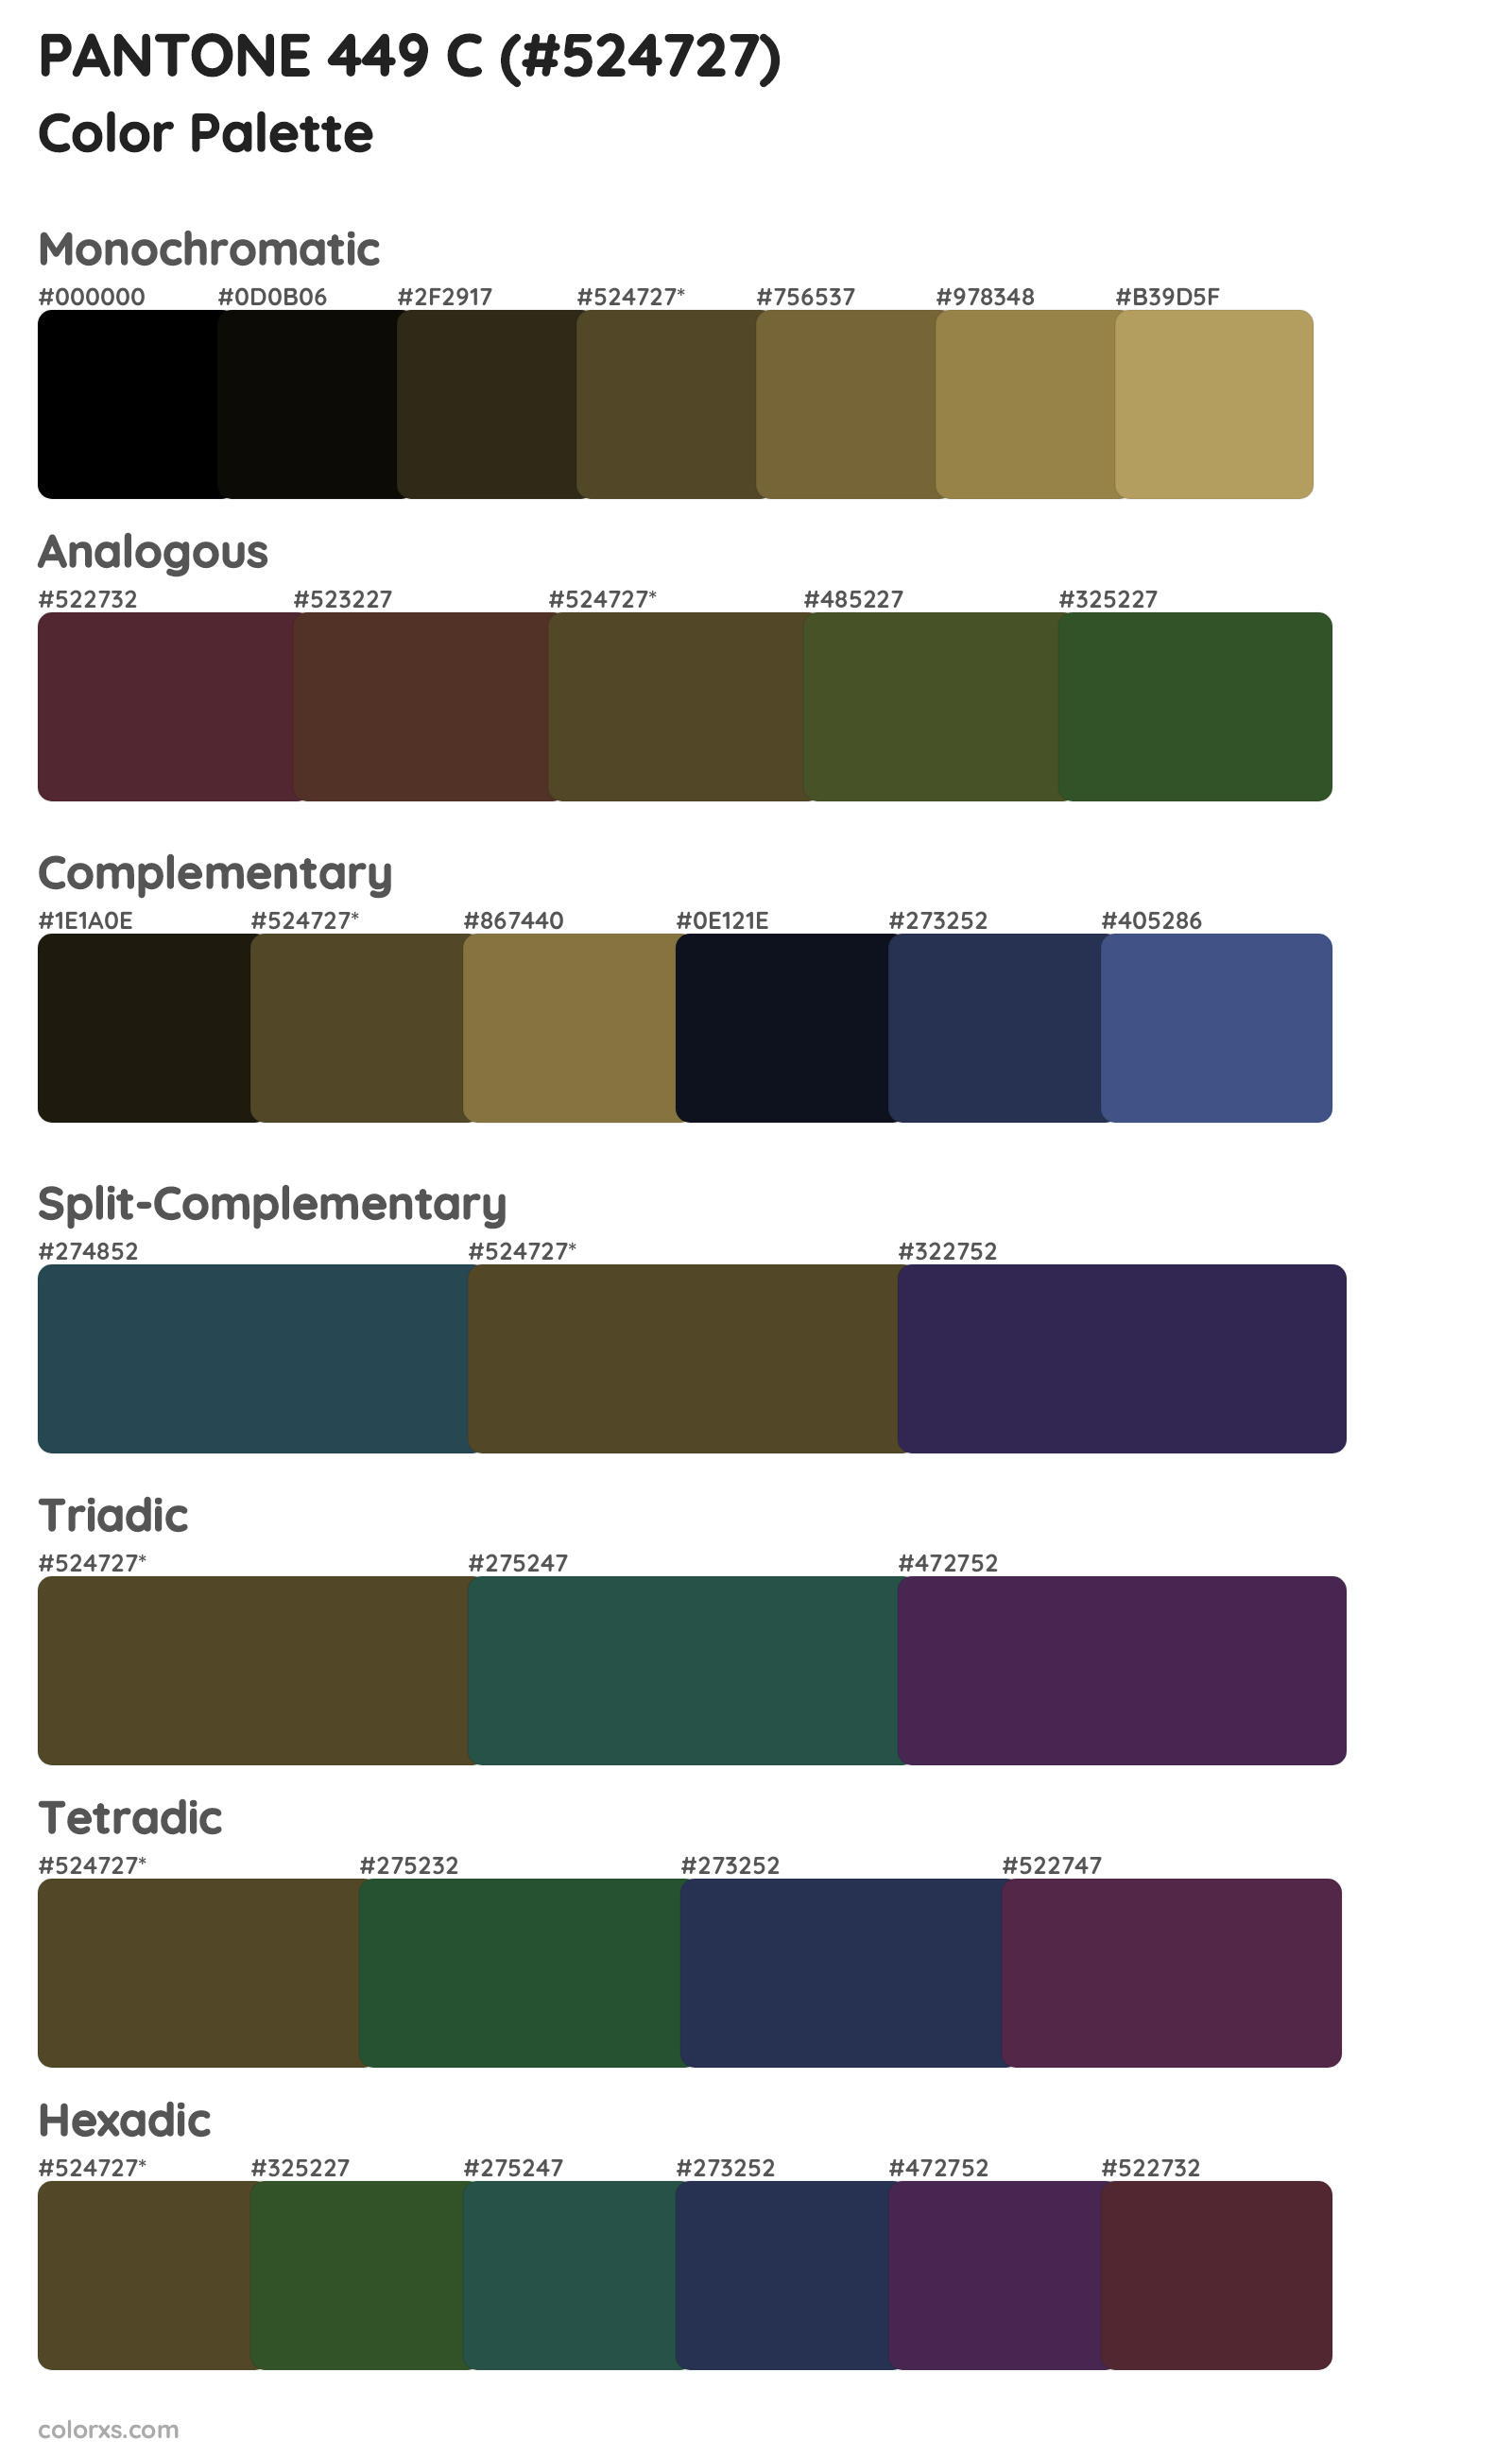 PANTONE 449 C Color Scheme Palettes